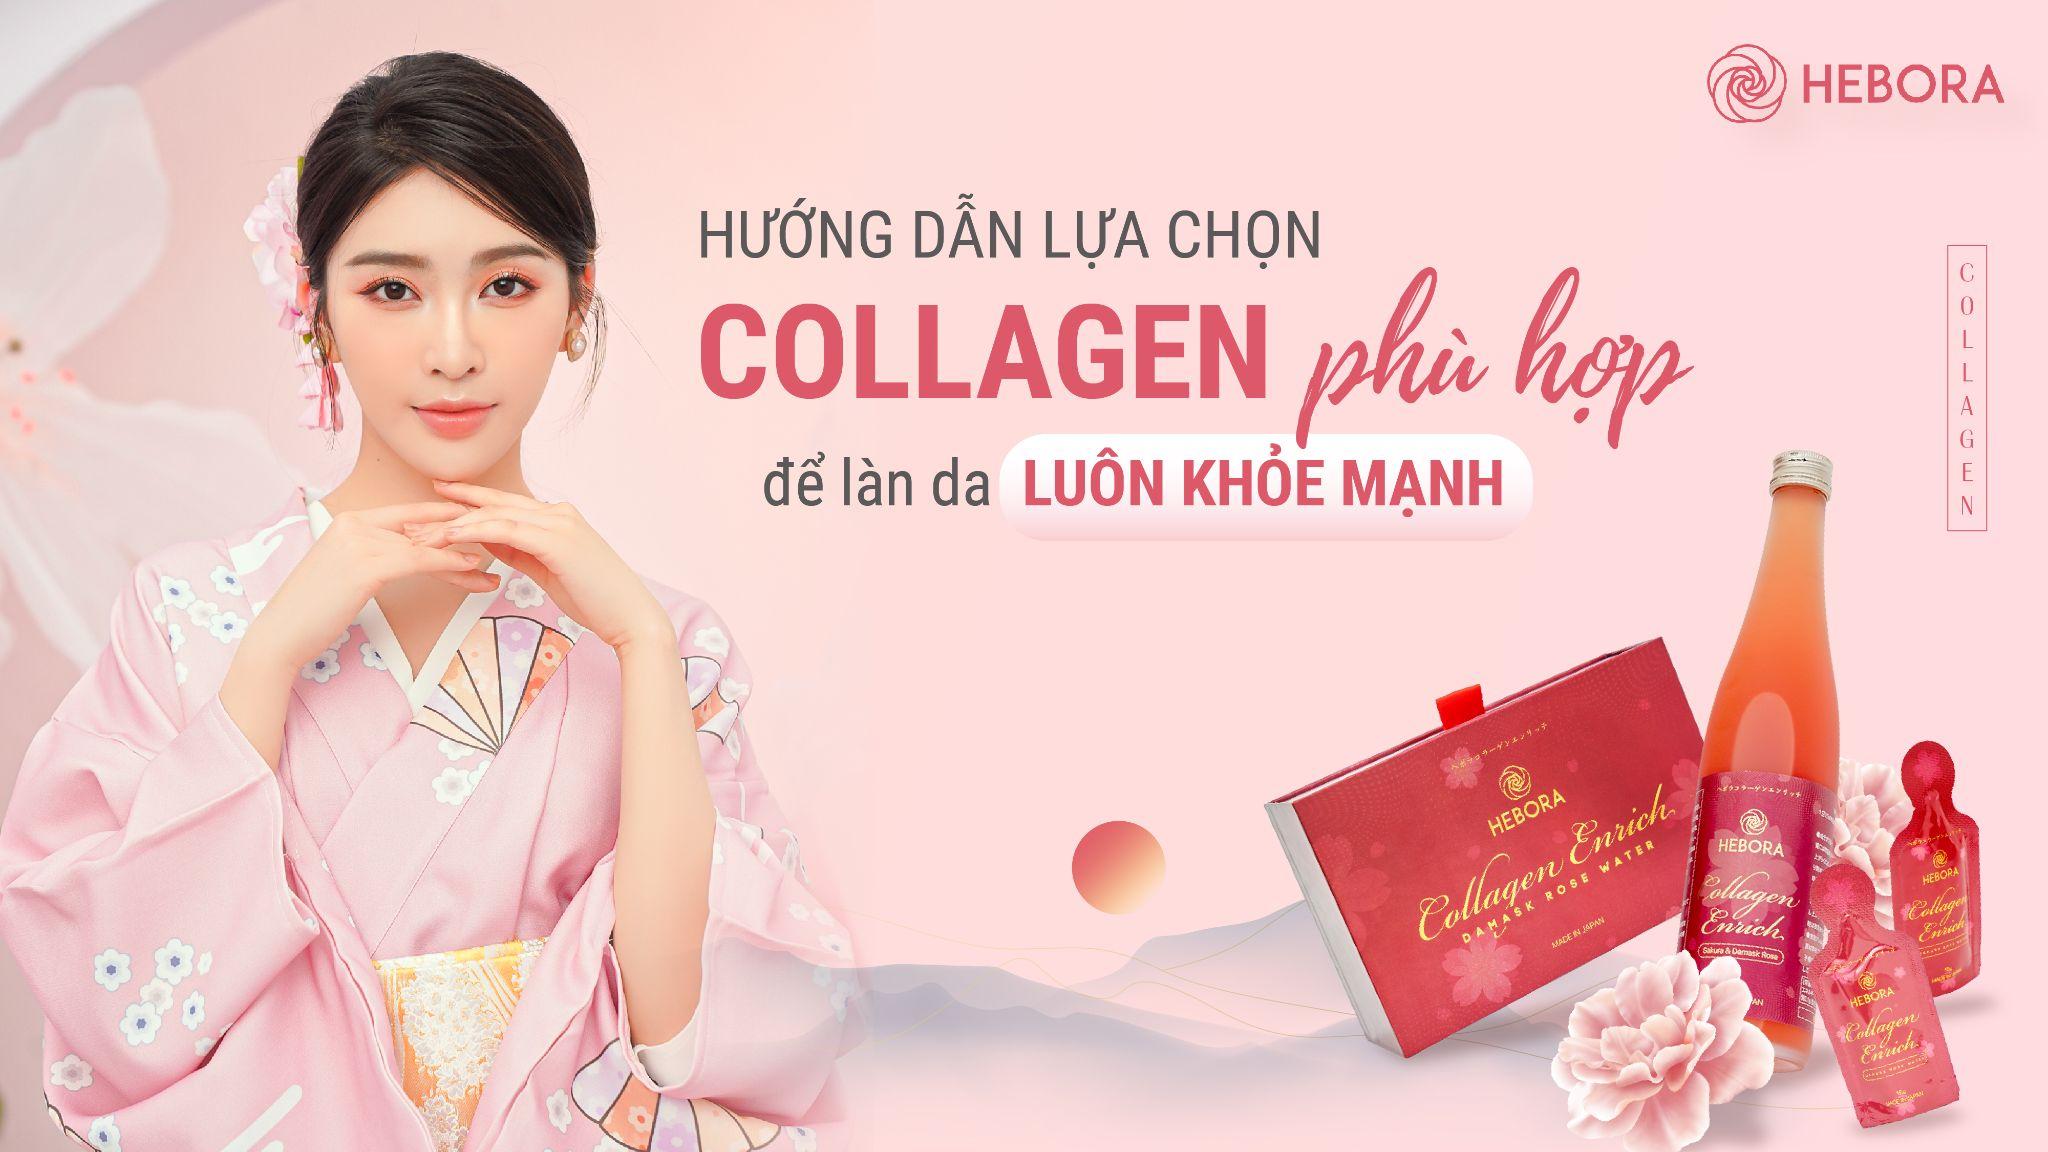 Hướng dẫn lựa chọn Collagen phù hợp để làn da luôn khỏe mạnh - 1